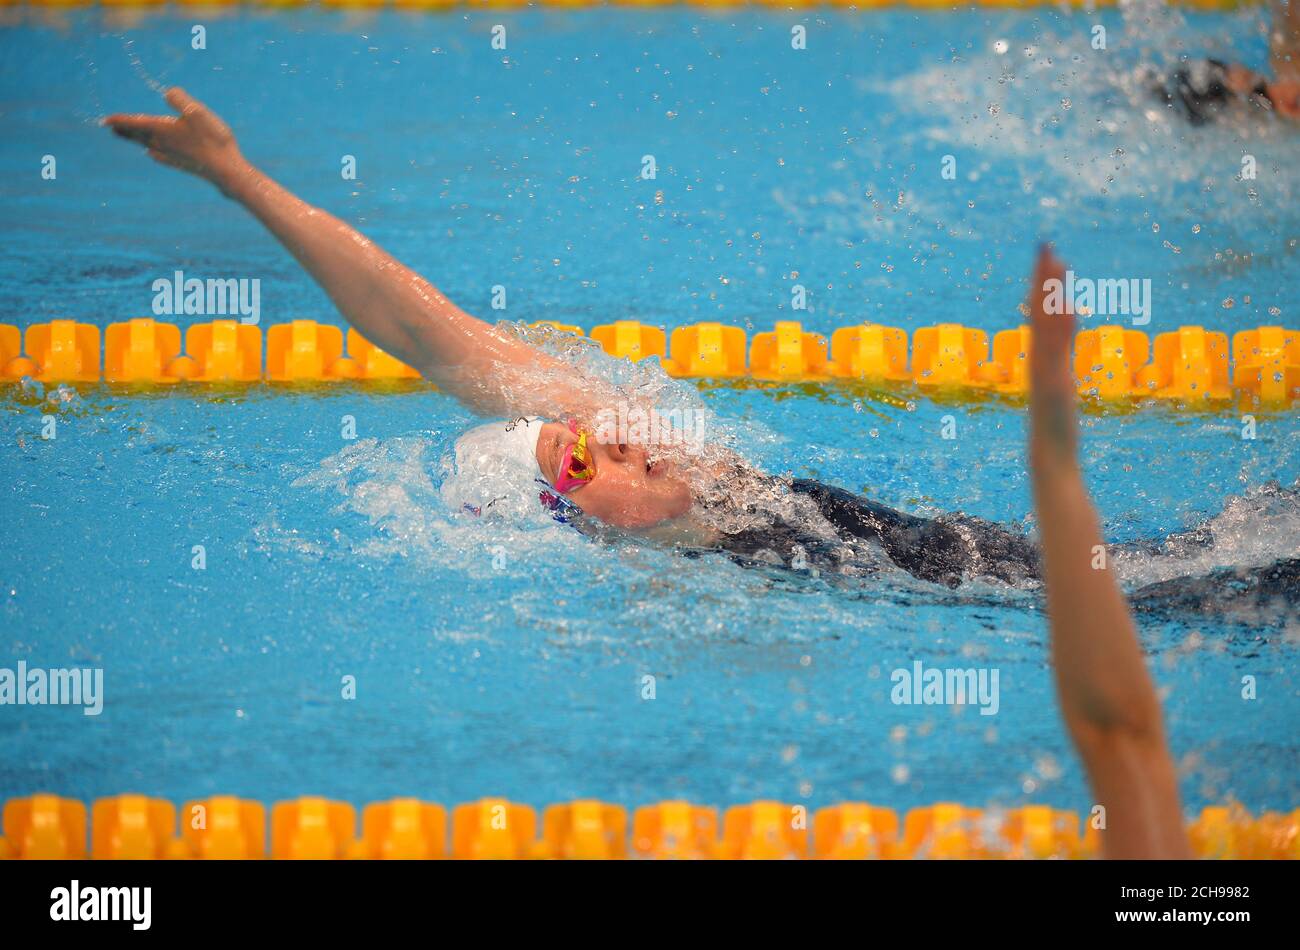 Hannah Miley, en Grande-Bretagne, participe à la demi-finale féminine Medley de 200 m pendant le dixième jour des championnats d'athlétisme européens au London Aquatics Centre, à Stratford. Banque D'Images